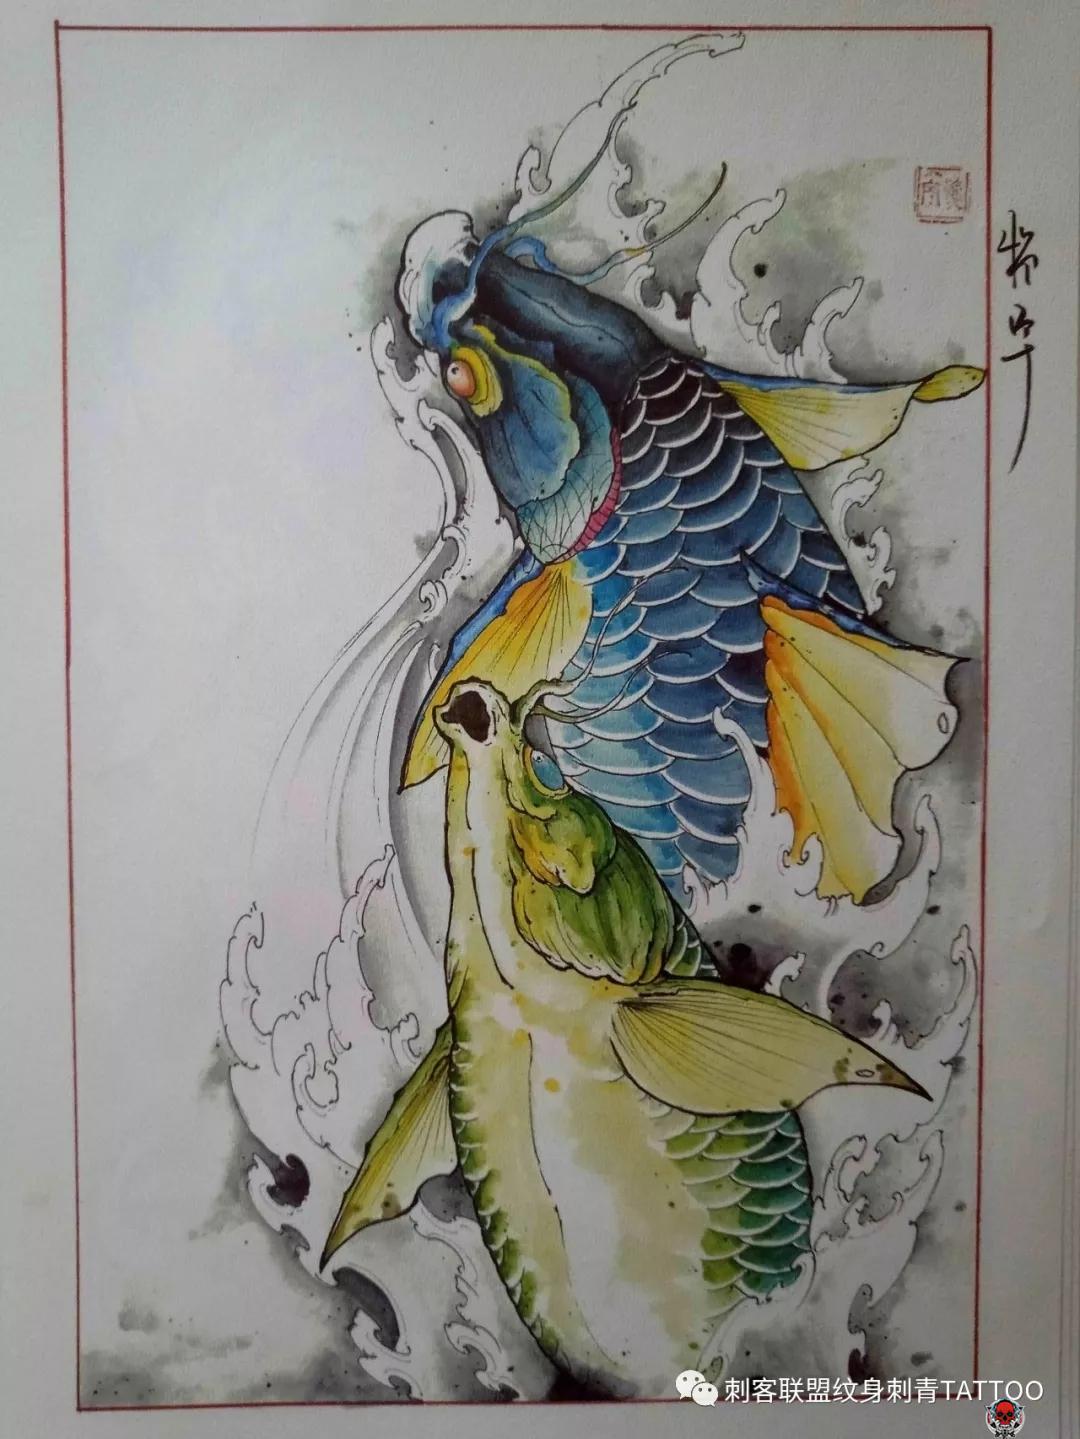 鱼纹身,鱼纹身手稿,鱼纹身手稿图案